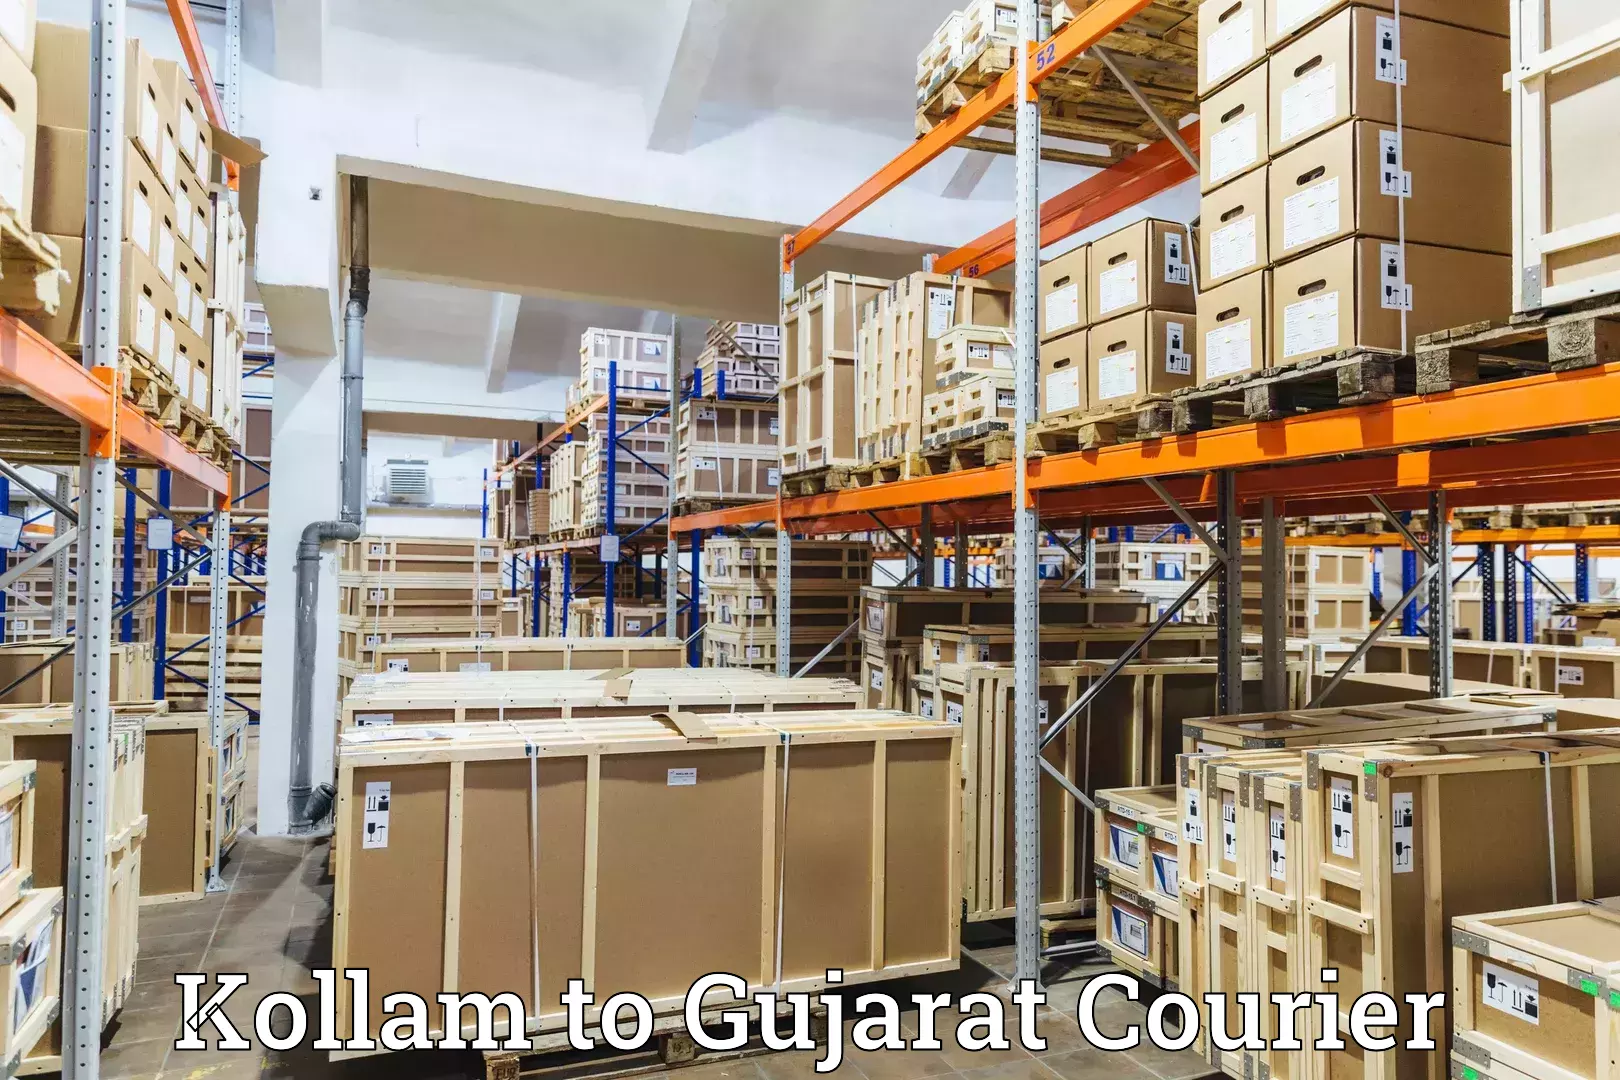 Global logistics network Kollam to Panchmahal